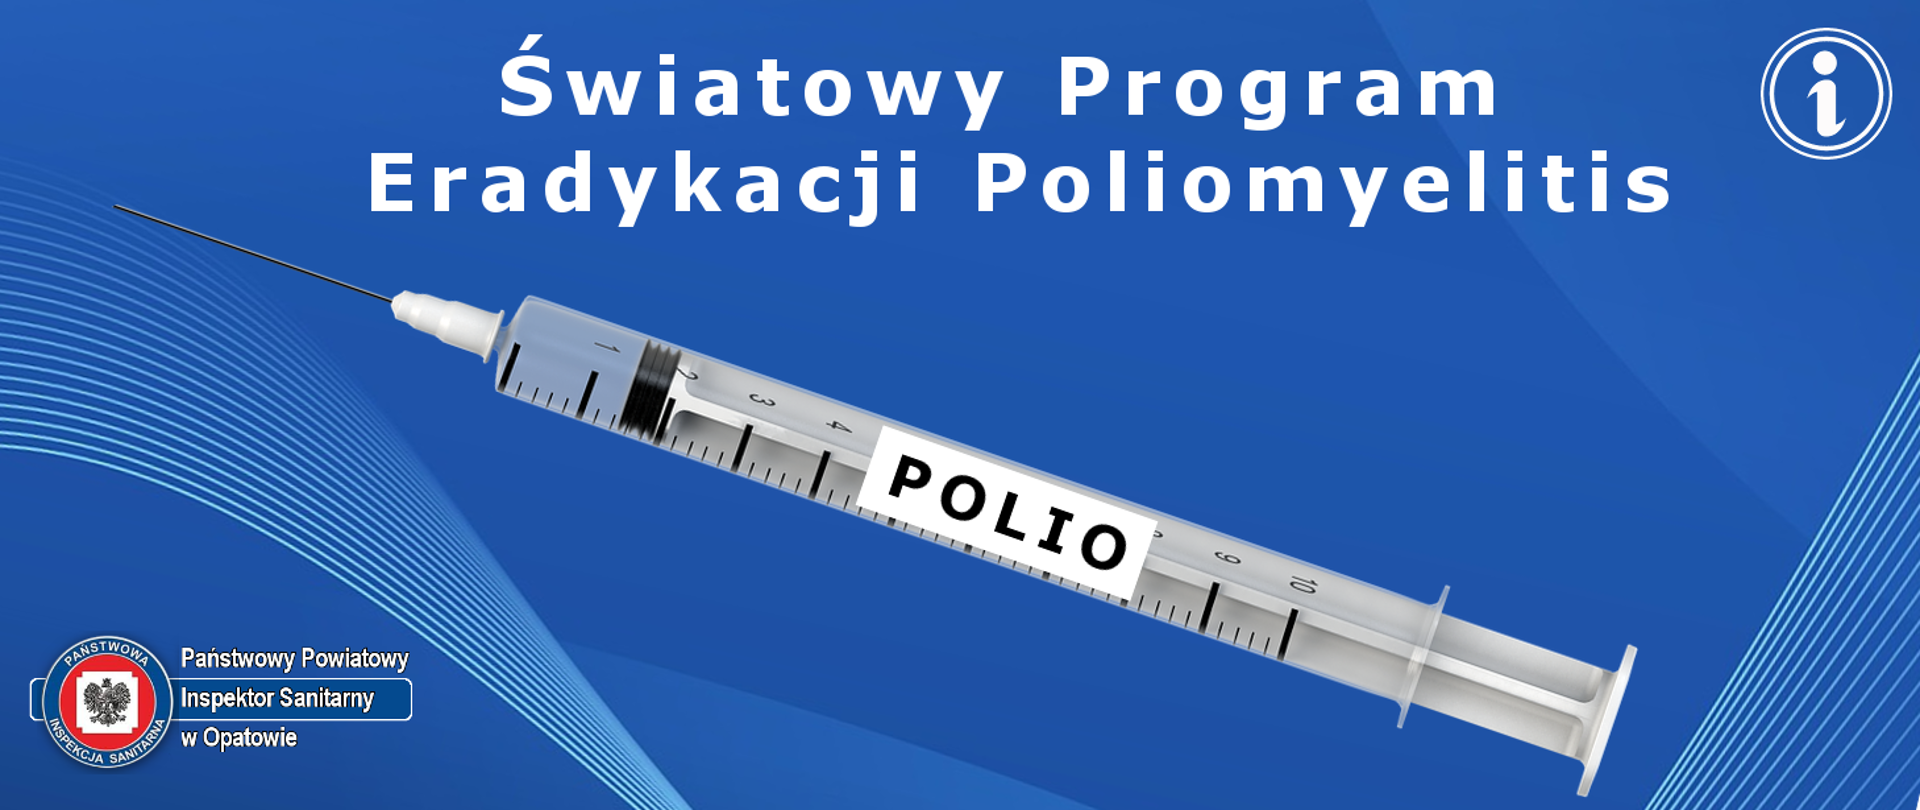 Światowy Program Eradykacji Poliomyelitis